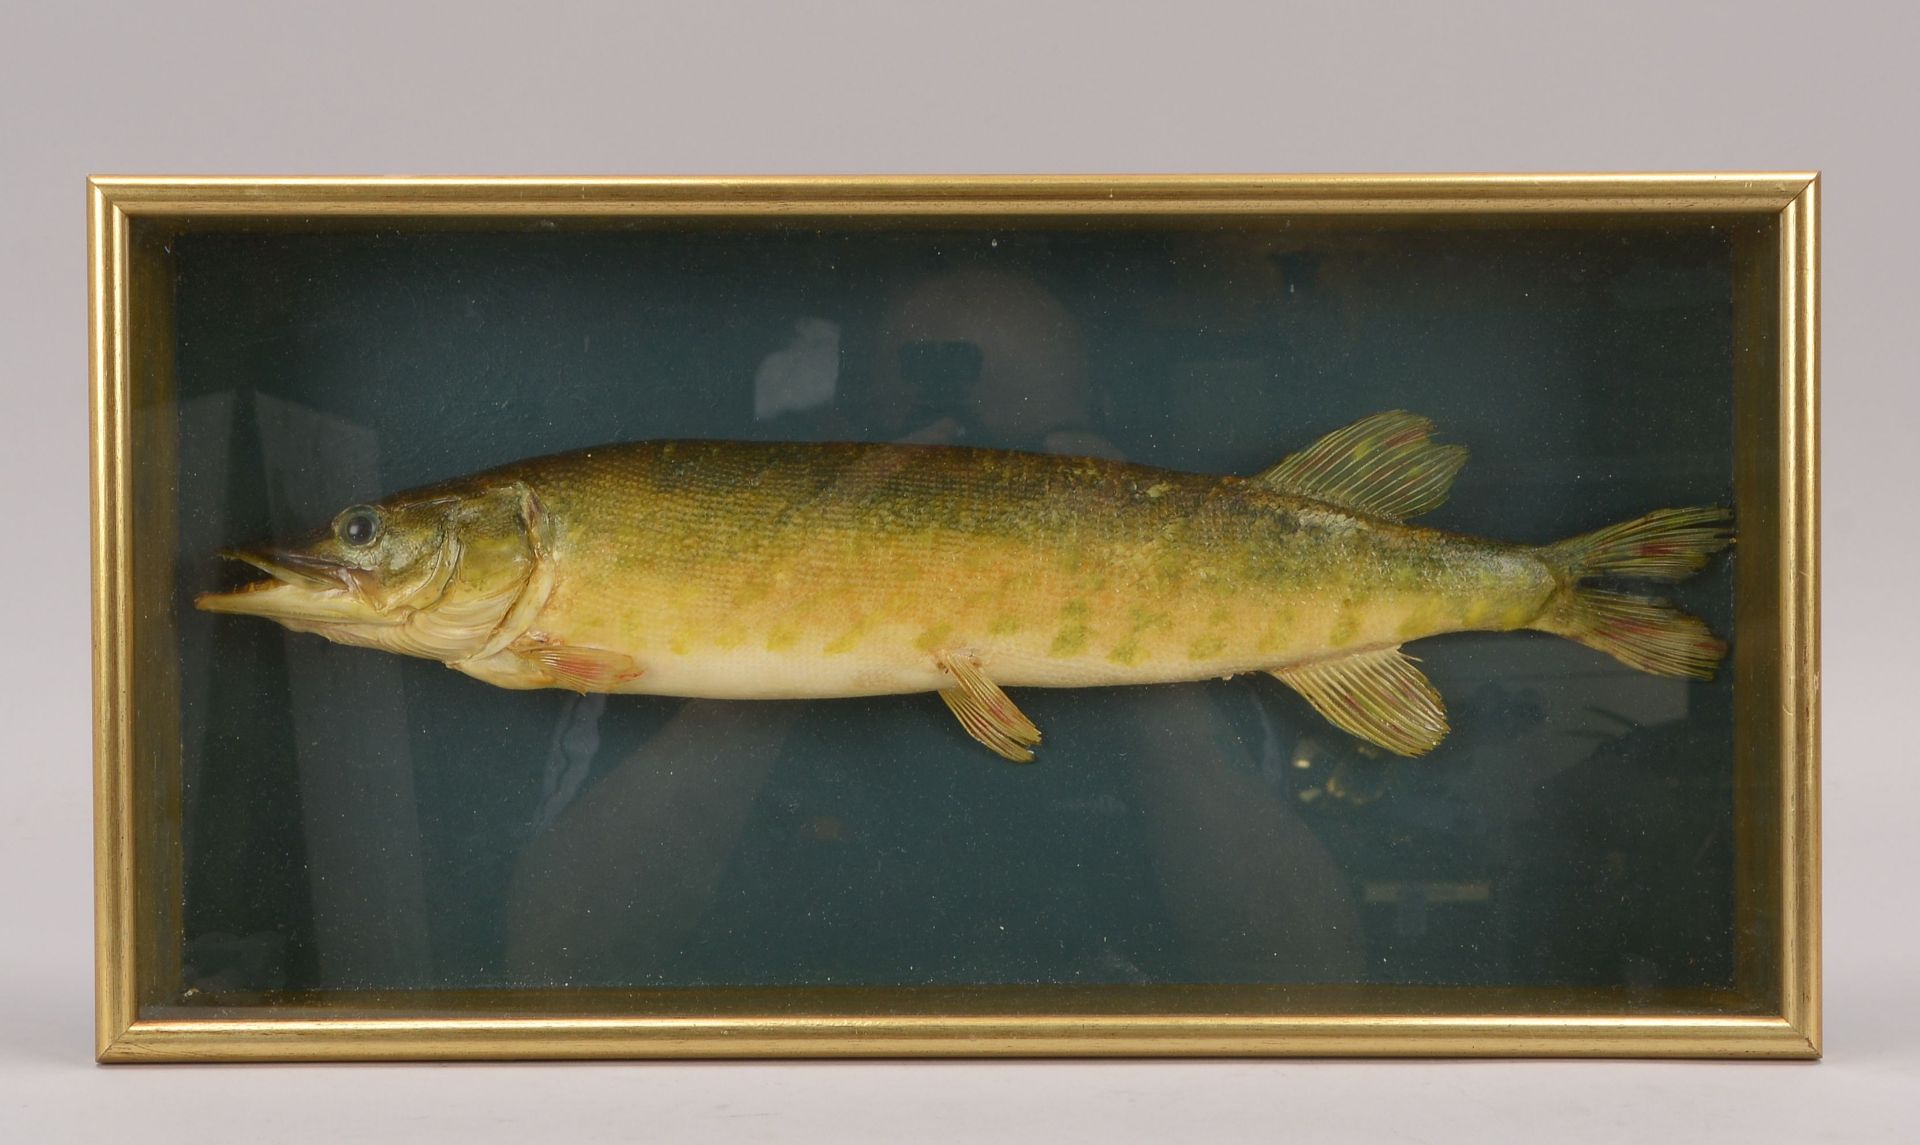 Tierpraeparat, -Lachs- (Laks), Fisch im verglasten Schaukasten, Laenge Fisch 42 cm, Masse Kasten 8 x